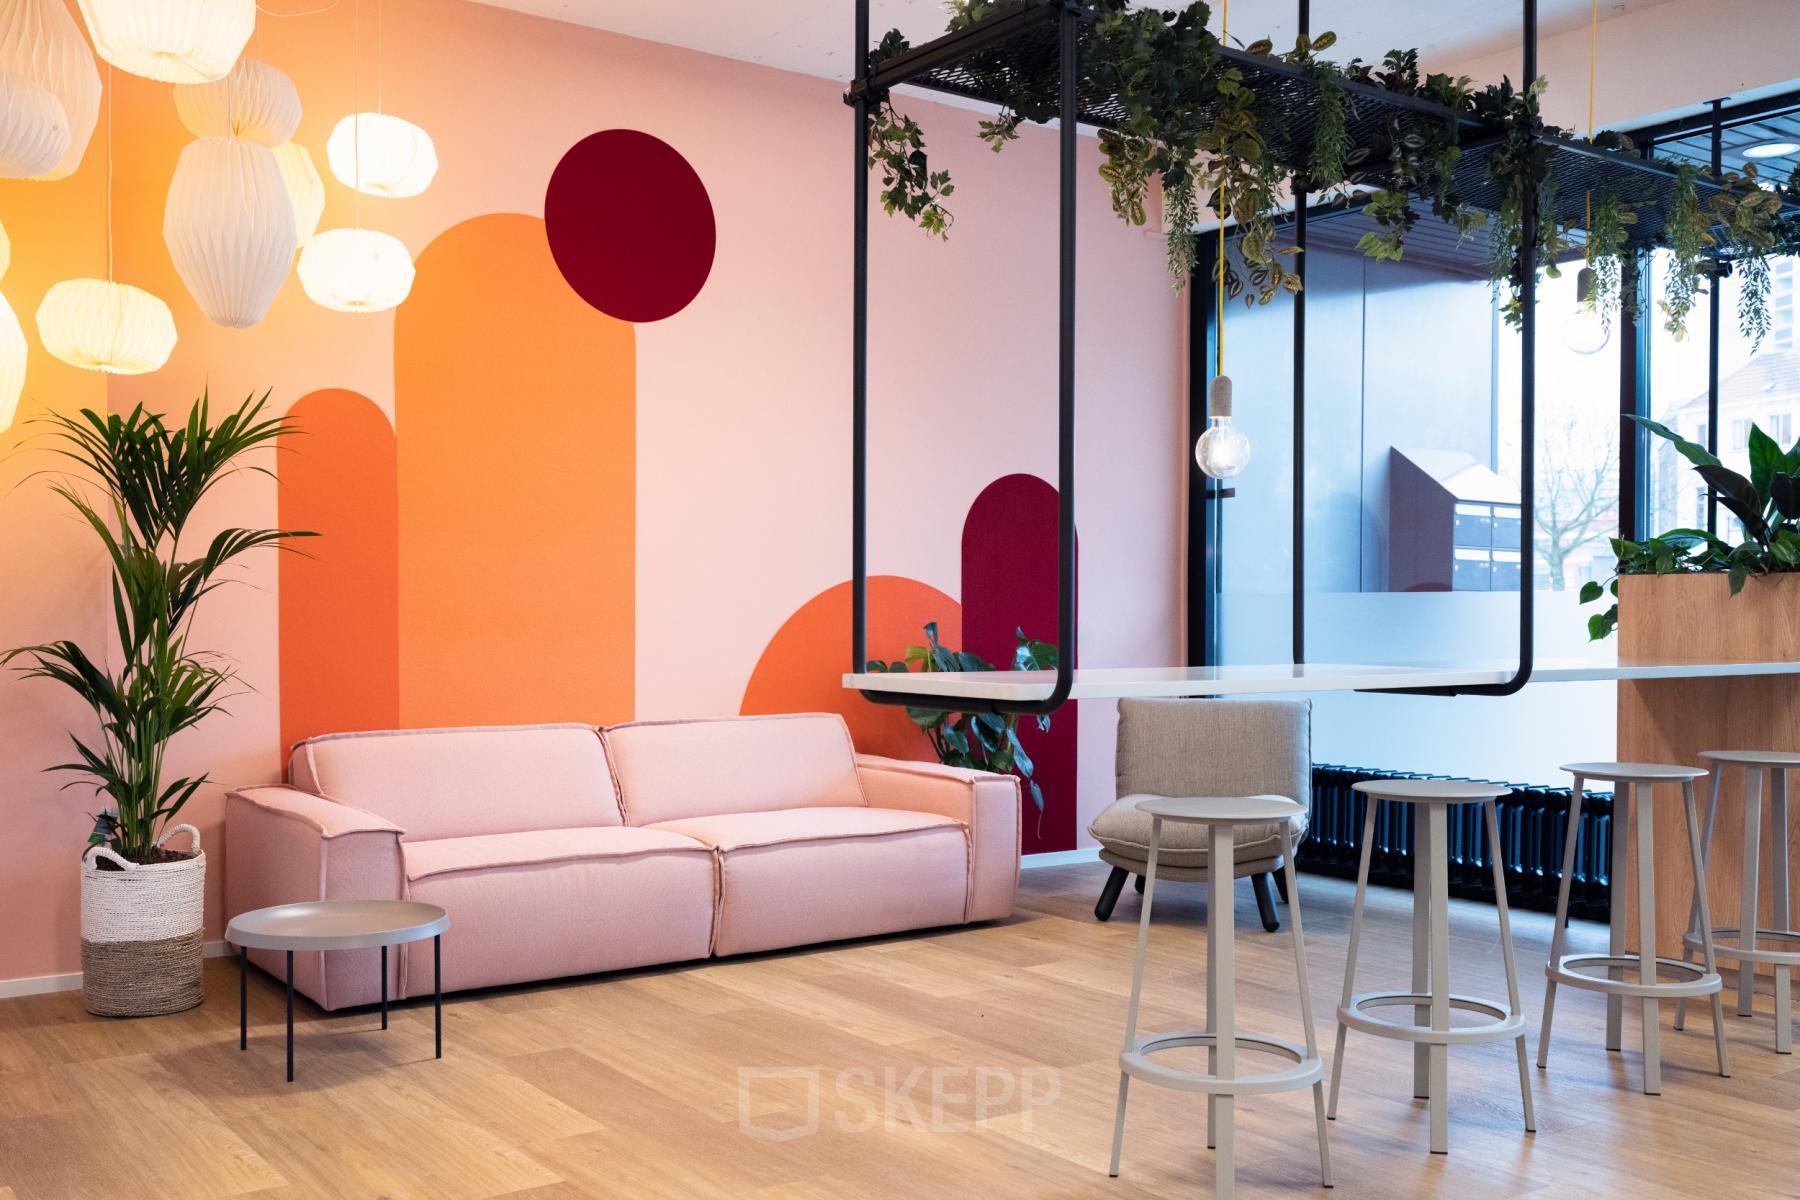 Moderne kantoorlounge in Arnhem Centrum aan de Jansbuitensingel 30, voorzien van een comfortabele roze bank, stijlvolle sta-tafels en speelse kleuraccenten.